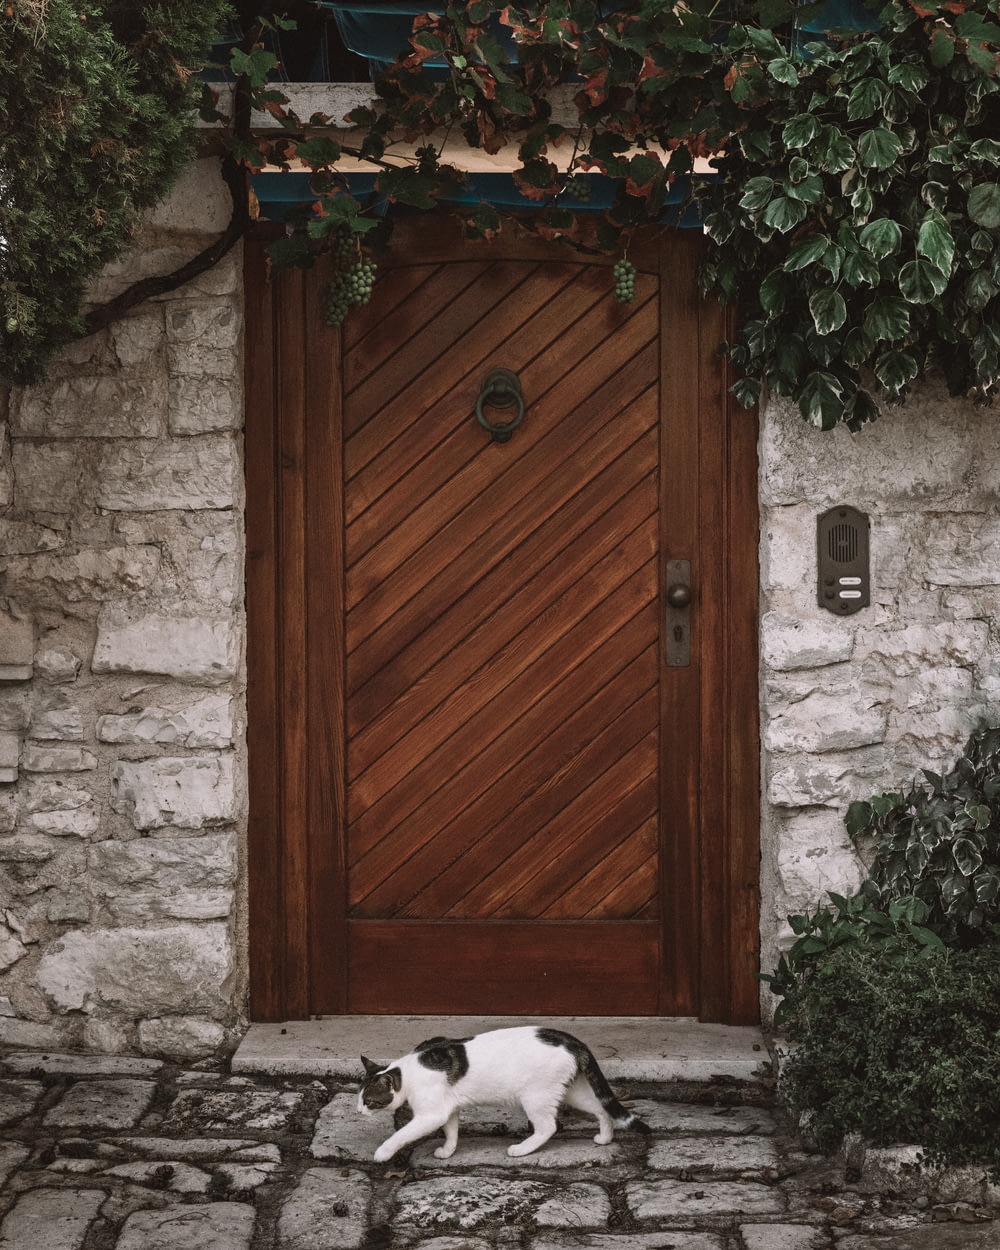 gato blanco y negro caminando junto a la puerta de madera marrón